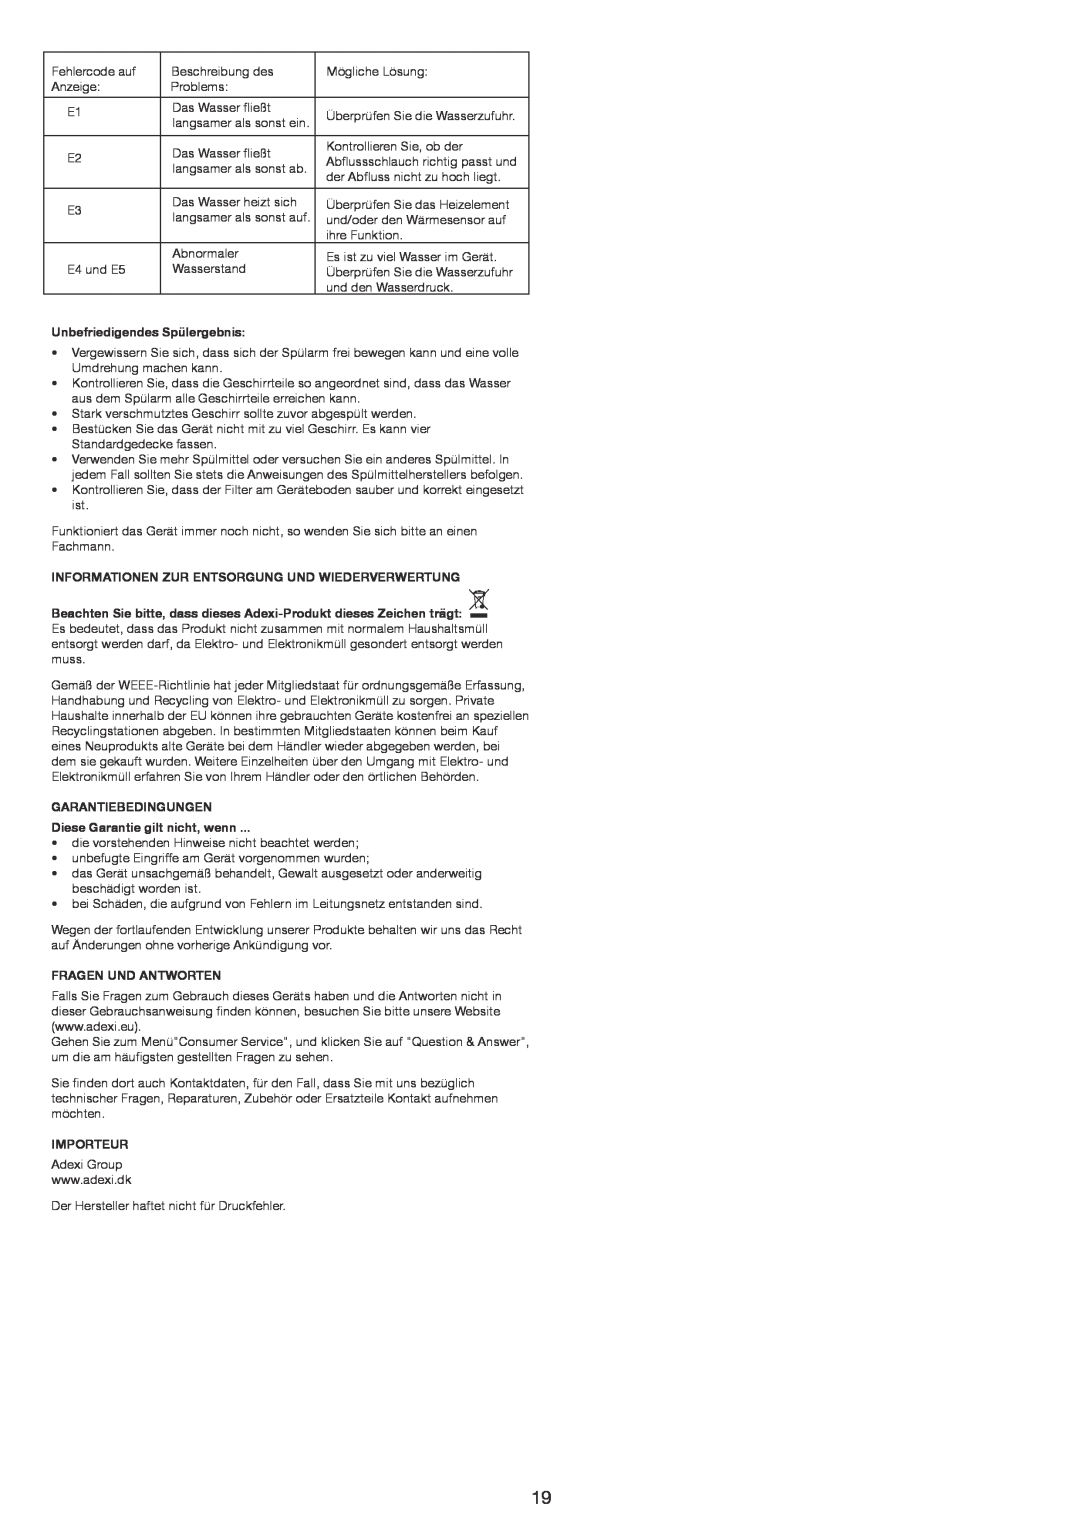 Melissa 658005 manual Unbefriedigendes Spülergebnis, Informationen Zur Entsorgung Und Wiederverwertung, Garantiebedingungen 